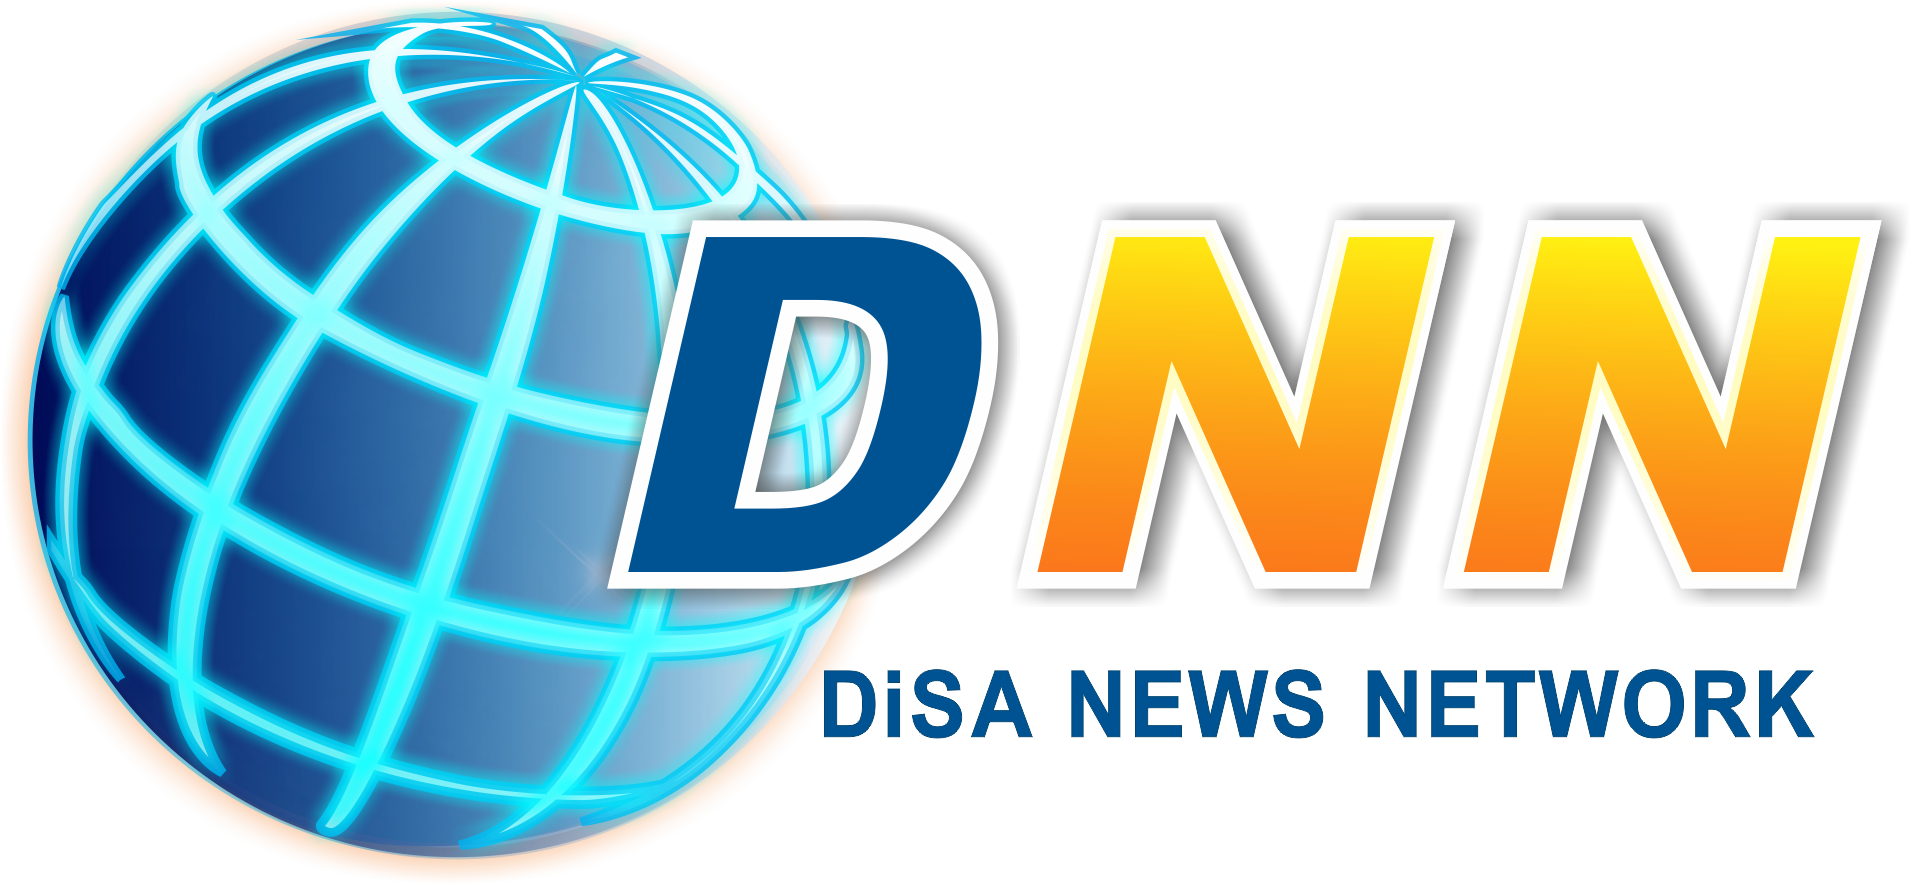 DiSA News Network (DNN)